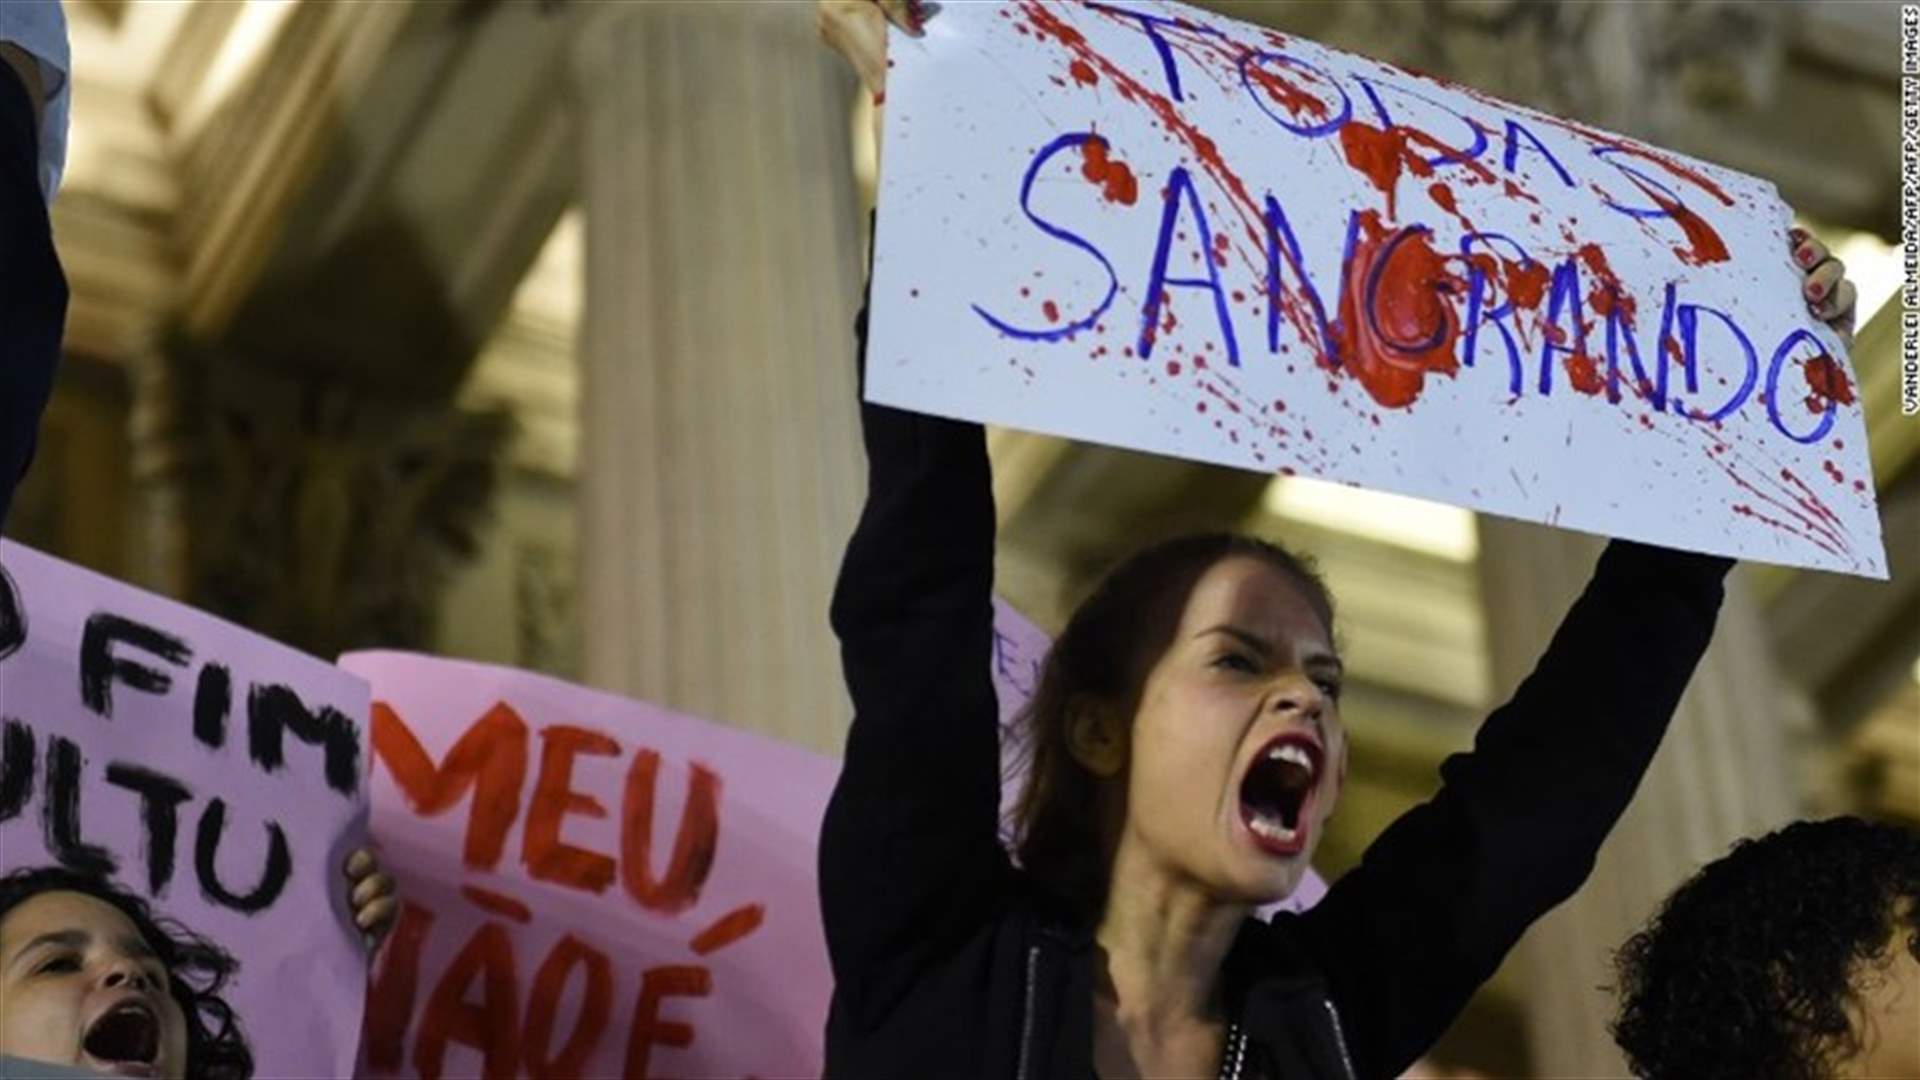 تفاصيل جديدة عن قضية اغتصاب قاصر في البرازيل